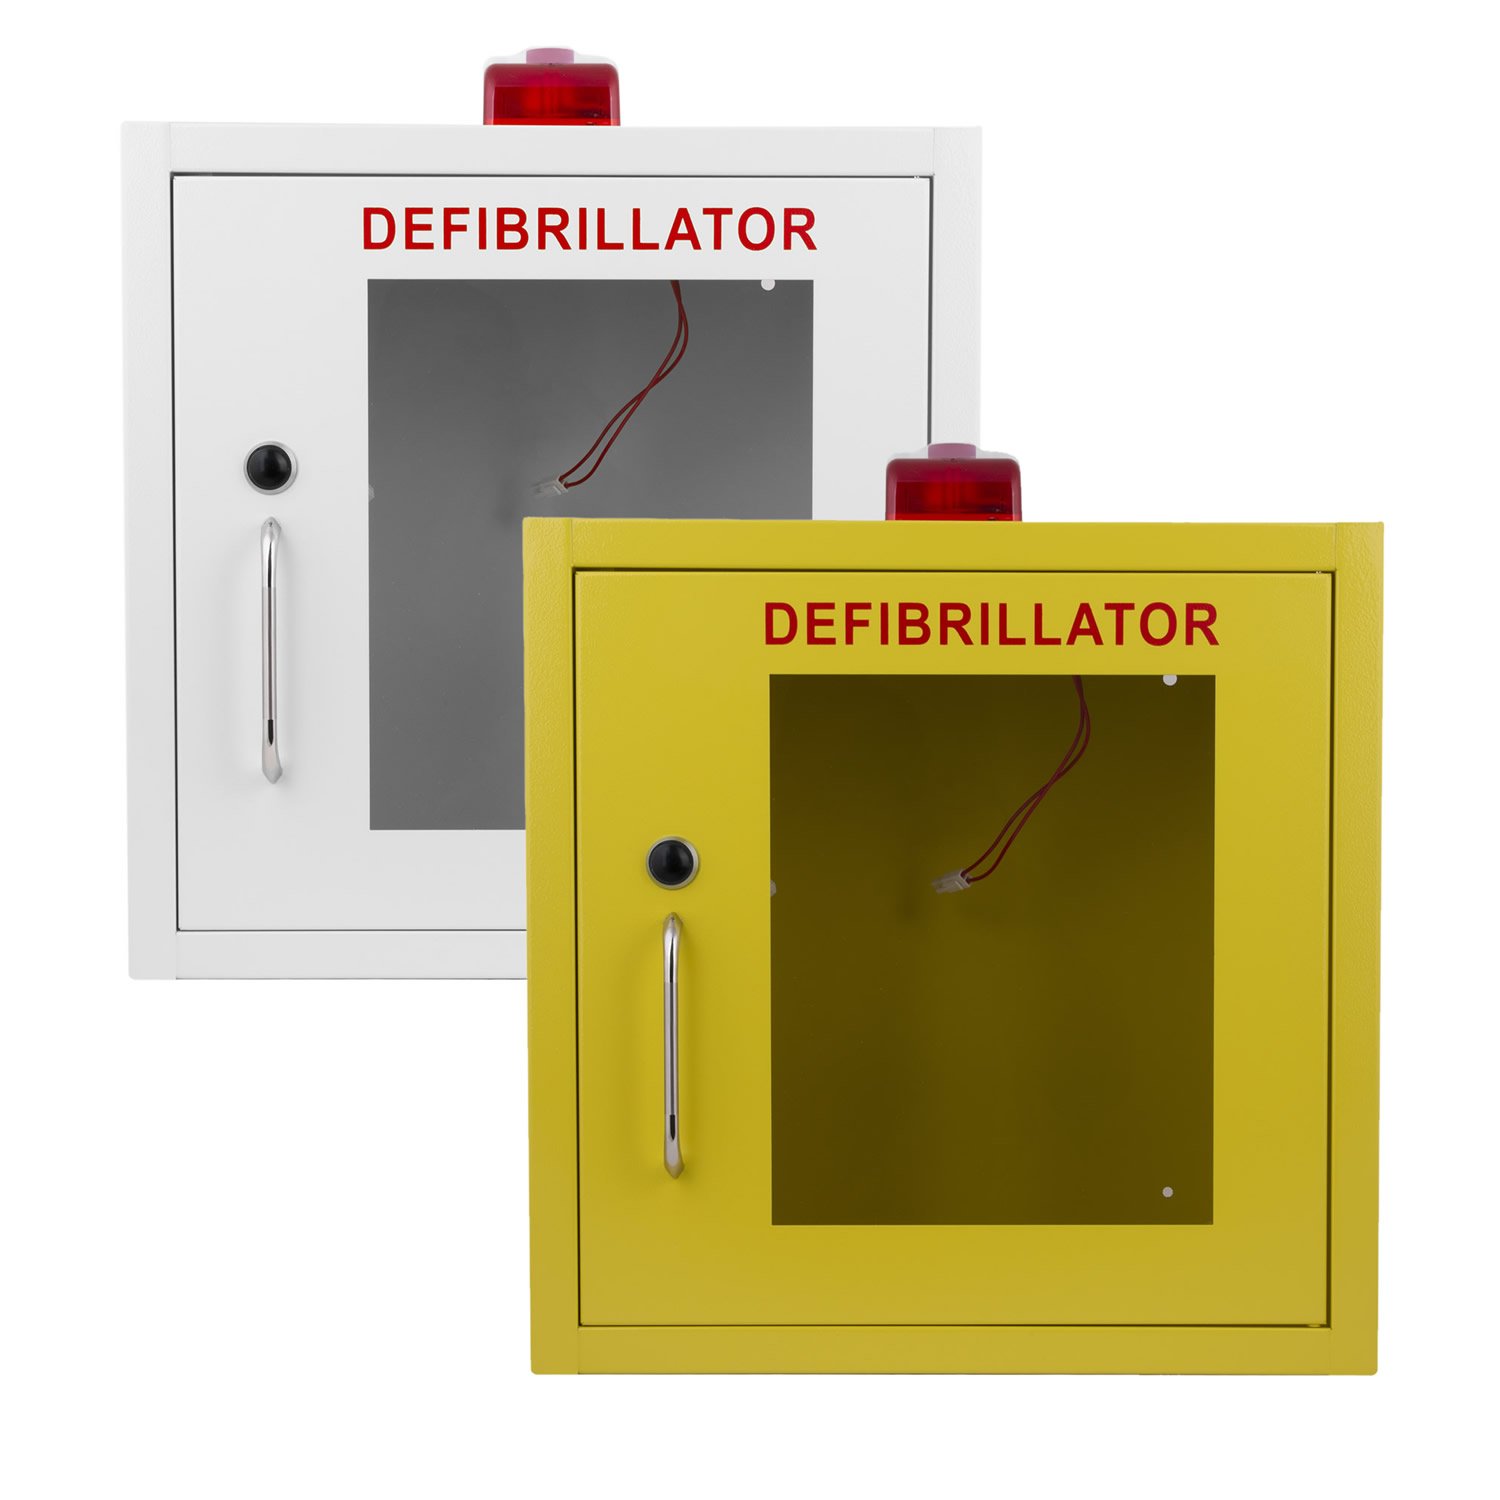 Defibrillator cabinet with strobe lights